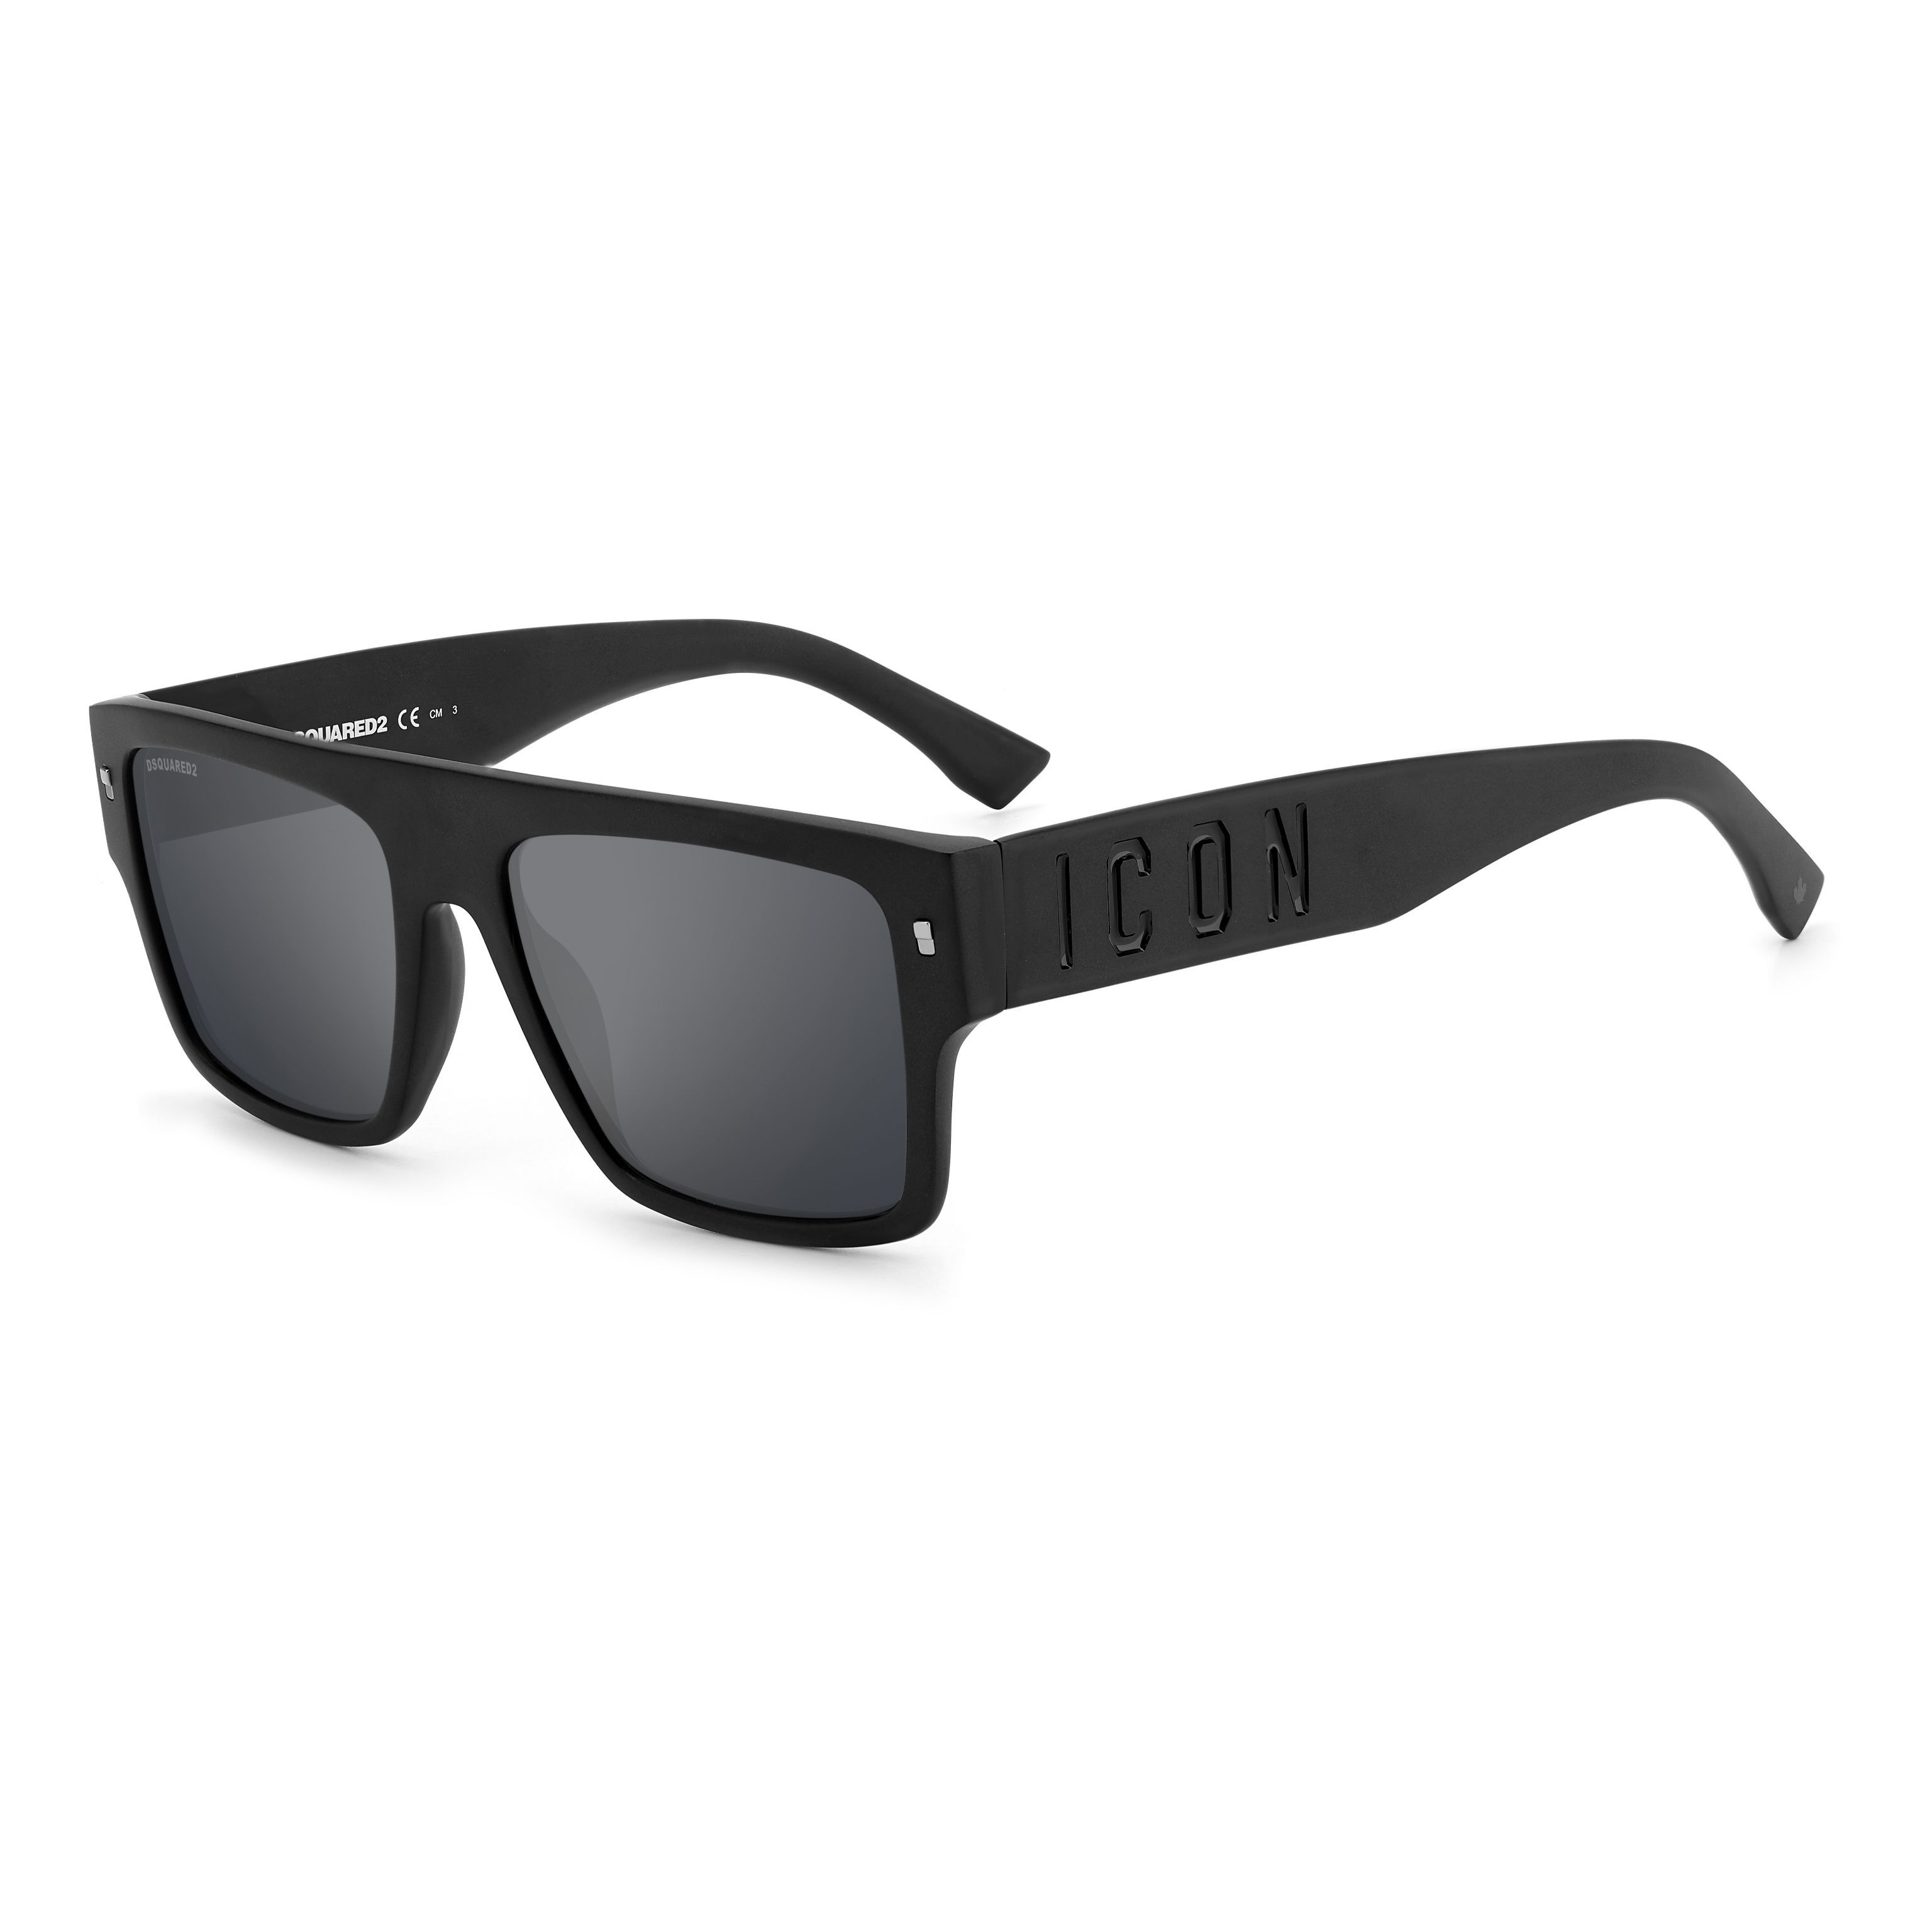 ICON 0003 S Square Sunglasses 003-T4 - size 56